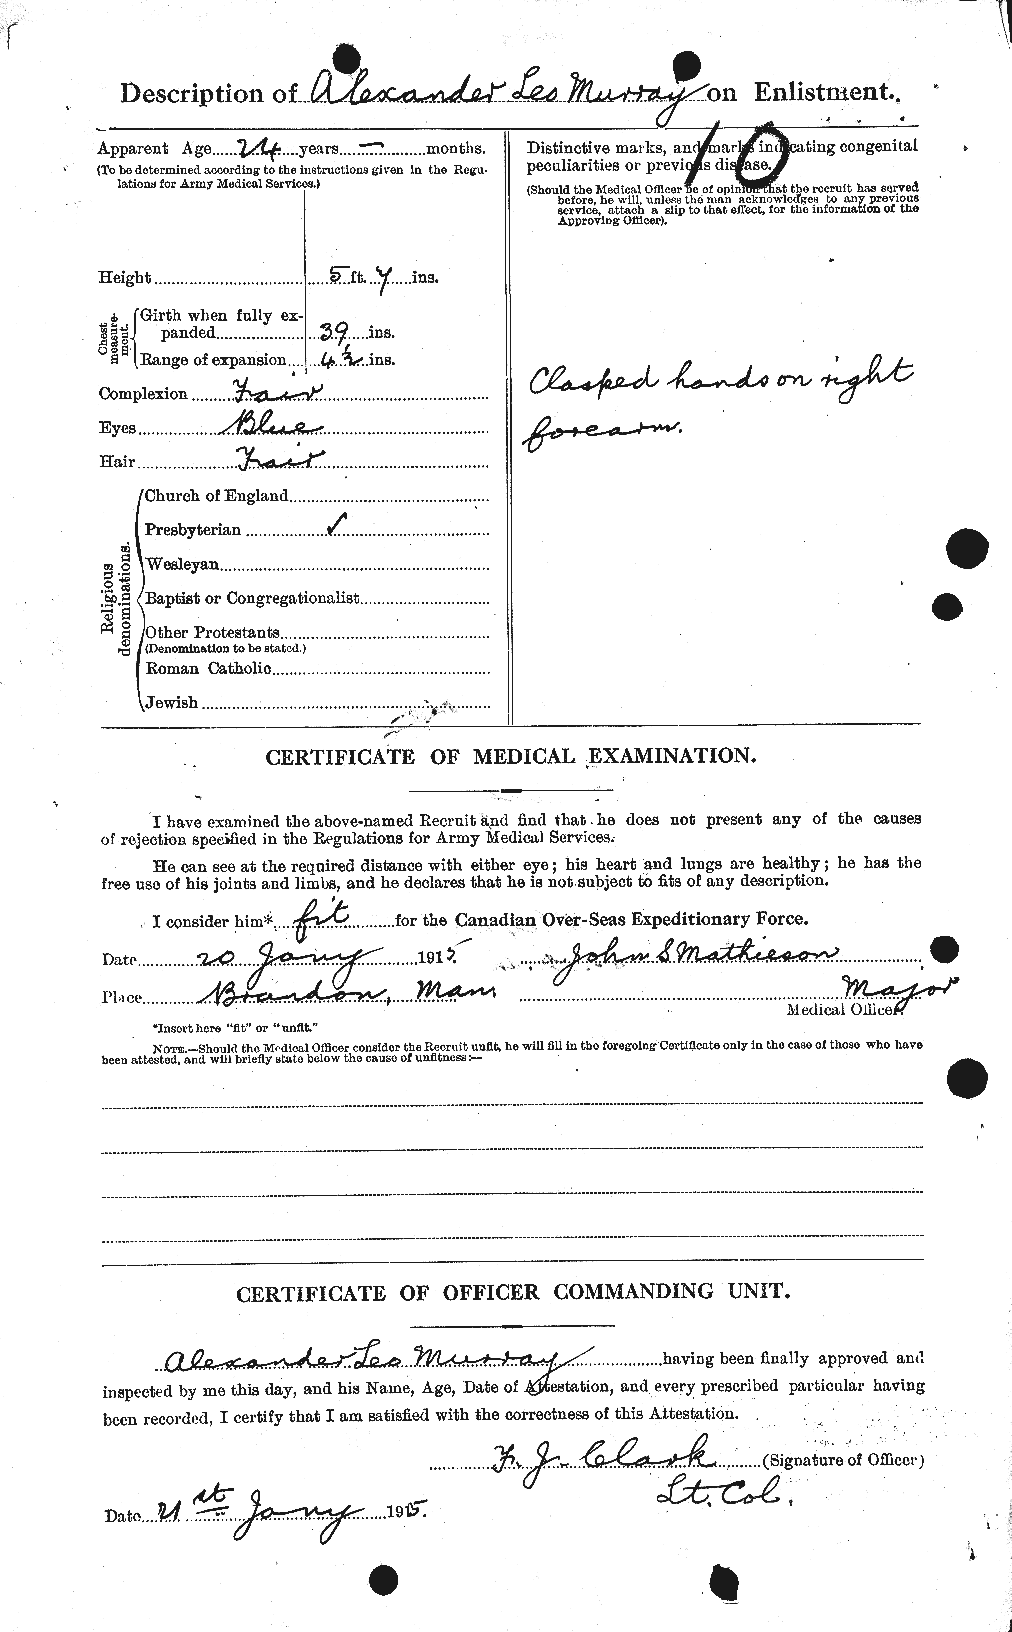 Dossiers du Personnel de la Première Guerre mondiale - CEC 512430b